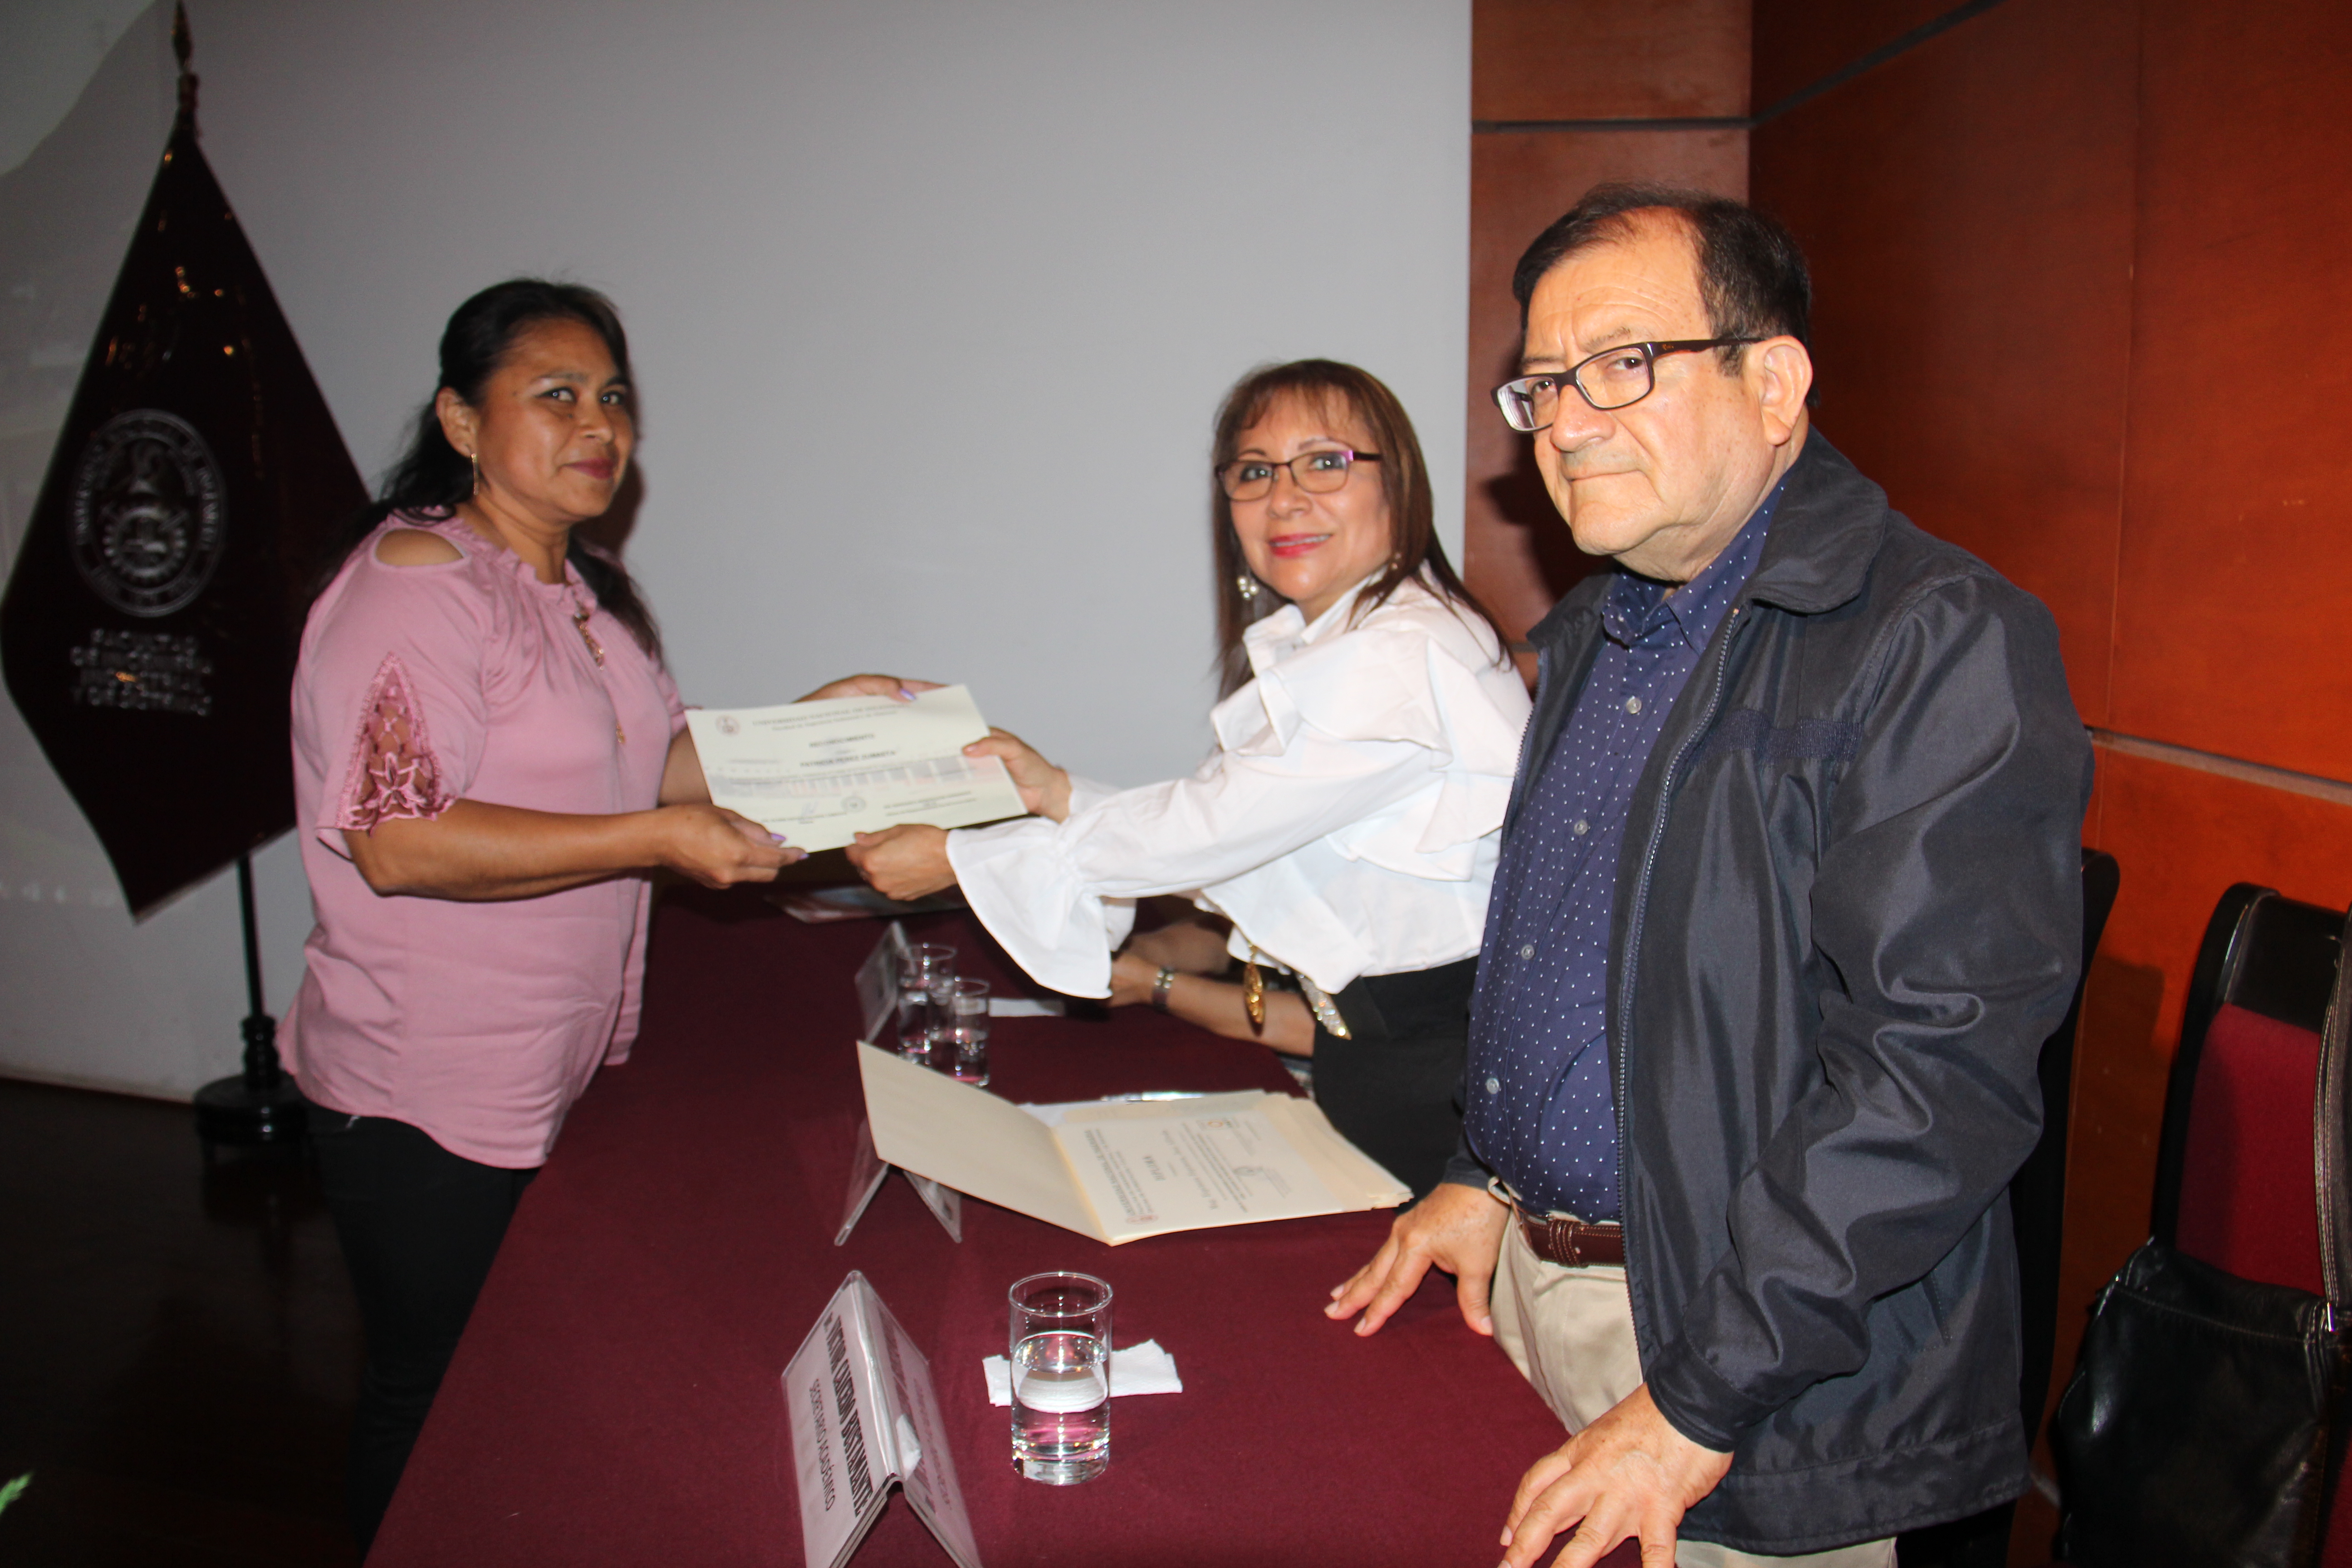 Entrega reconocimiento trabajadora por la Dra. Valdivia